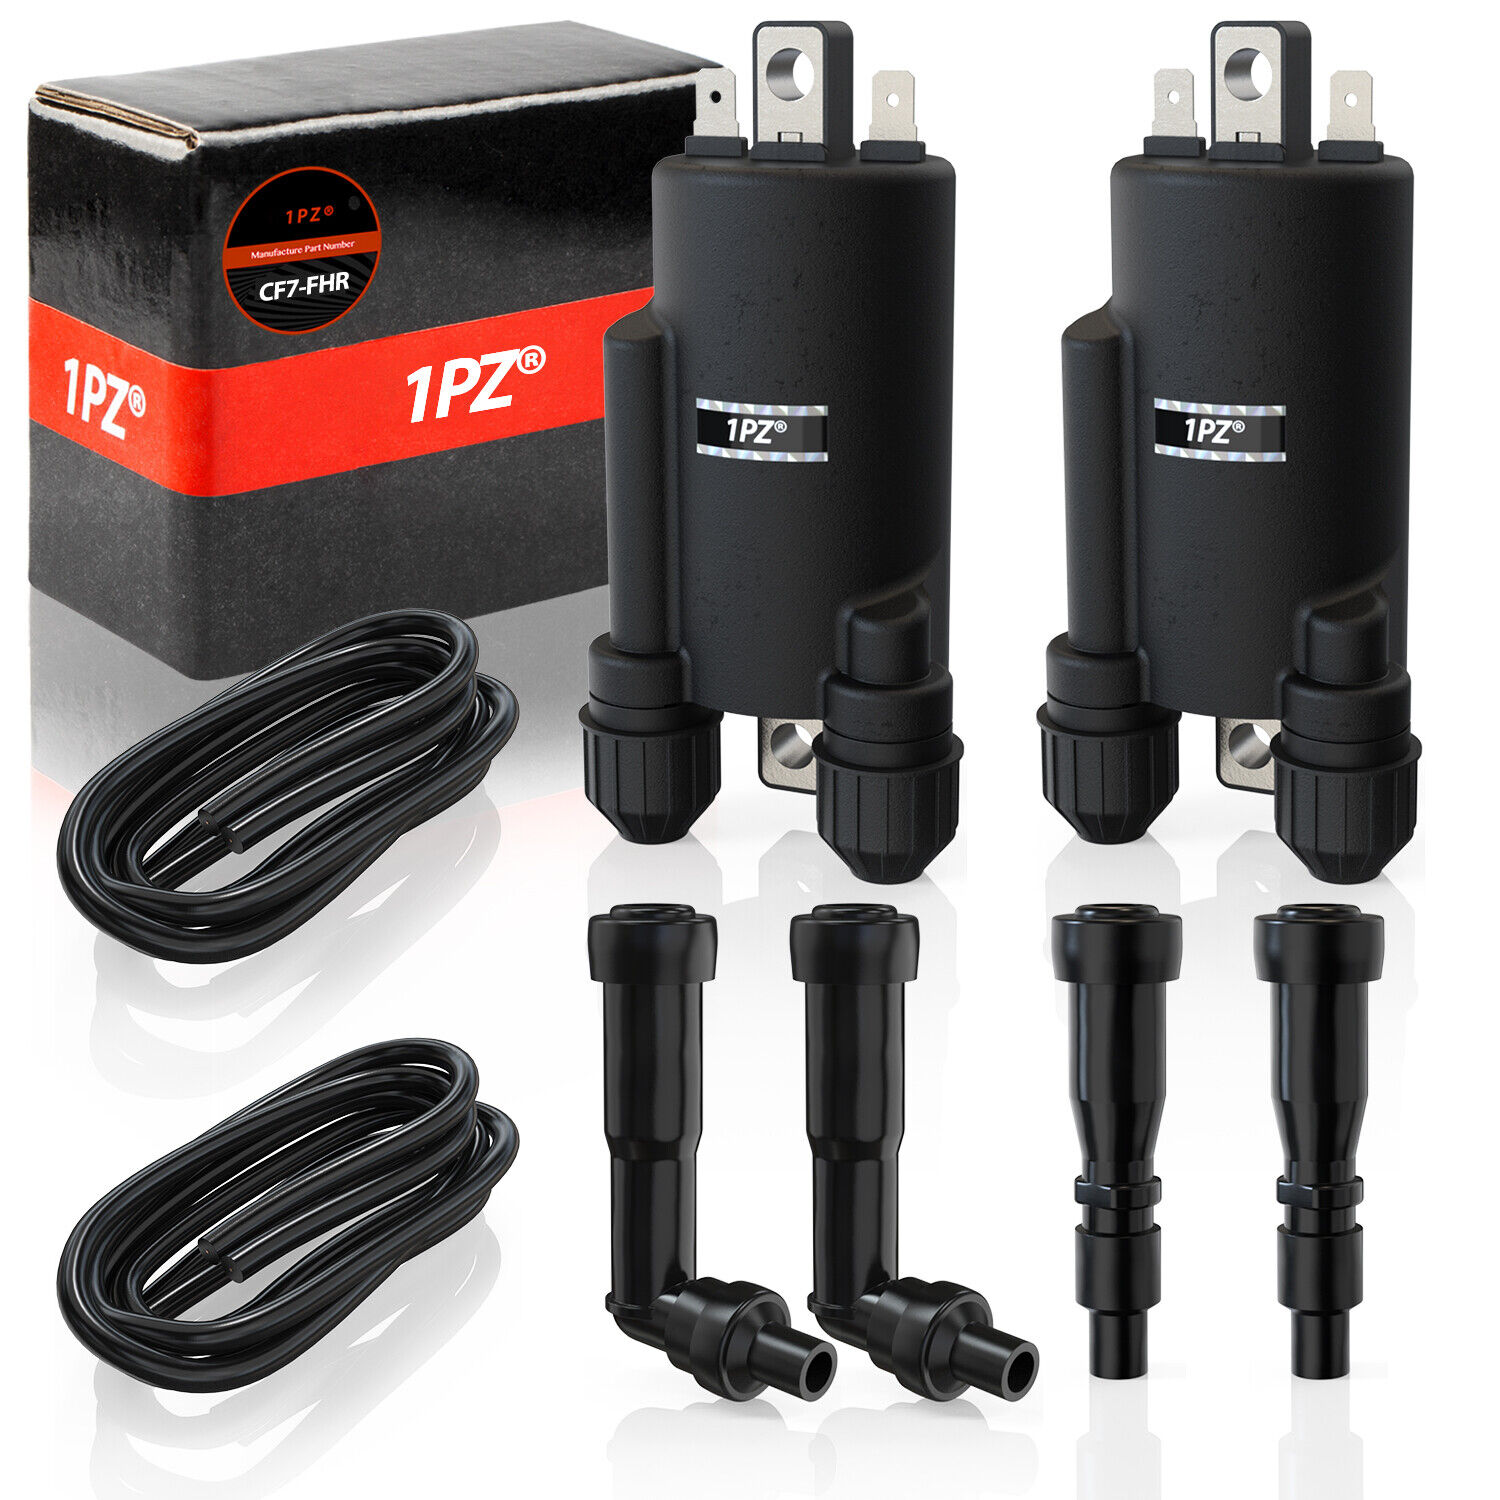 2x Ignition Coils Set For Honda CB 750 900 1000 Super Sport 79-82 #30500-422-013